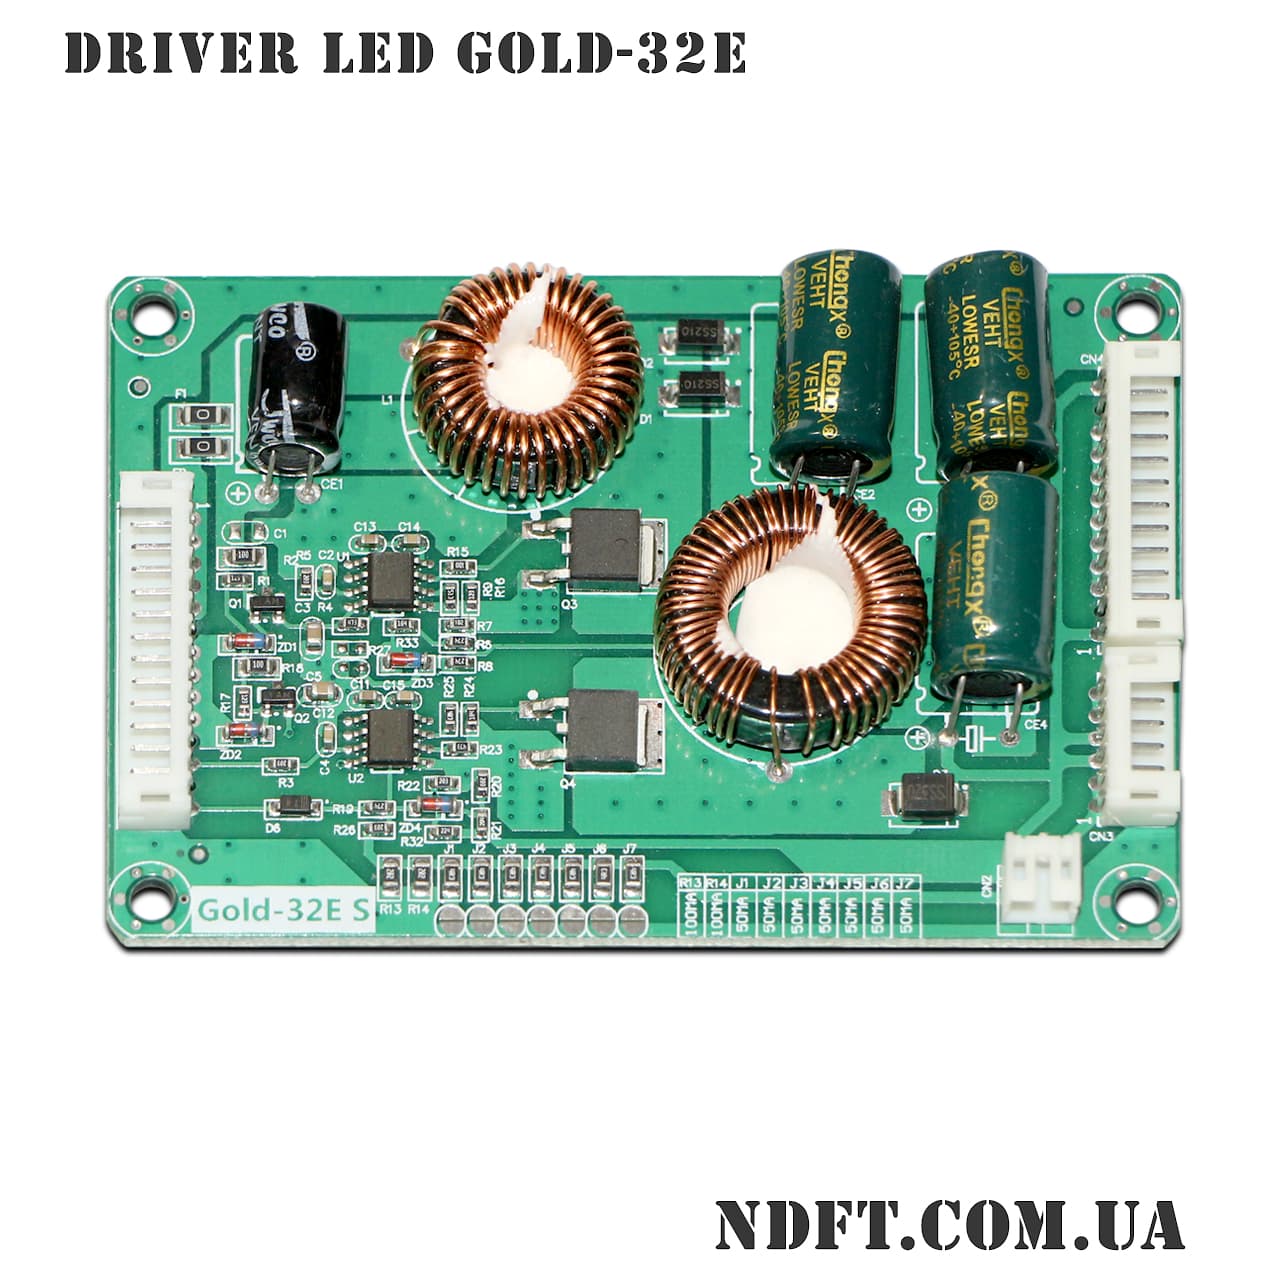 Gold-32E s (CA-299) – Универсальный драйвер LED подсветки для экранов .